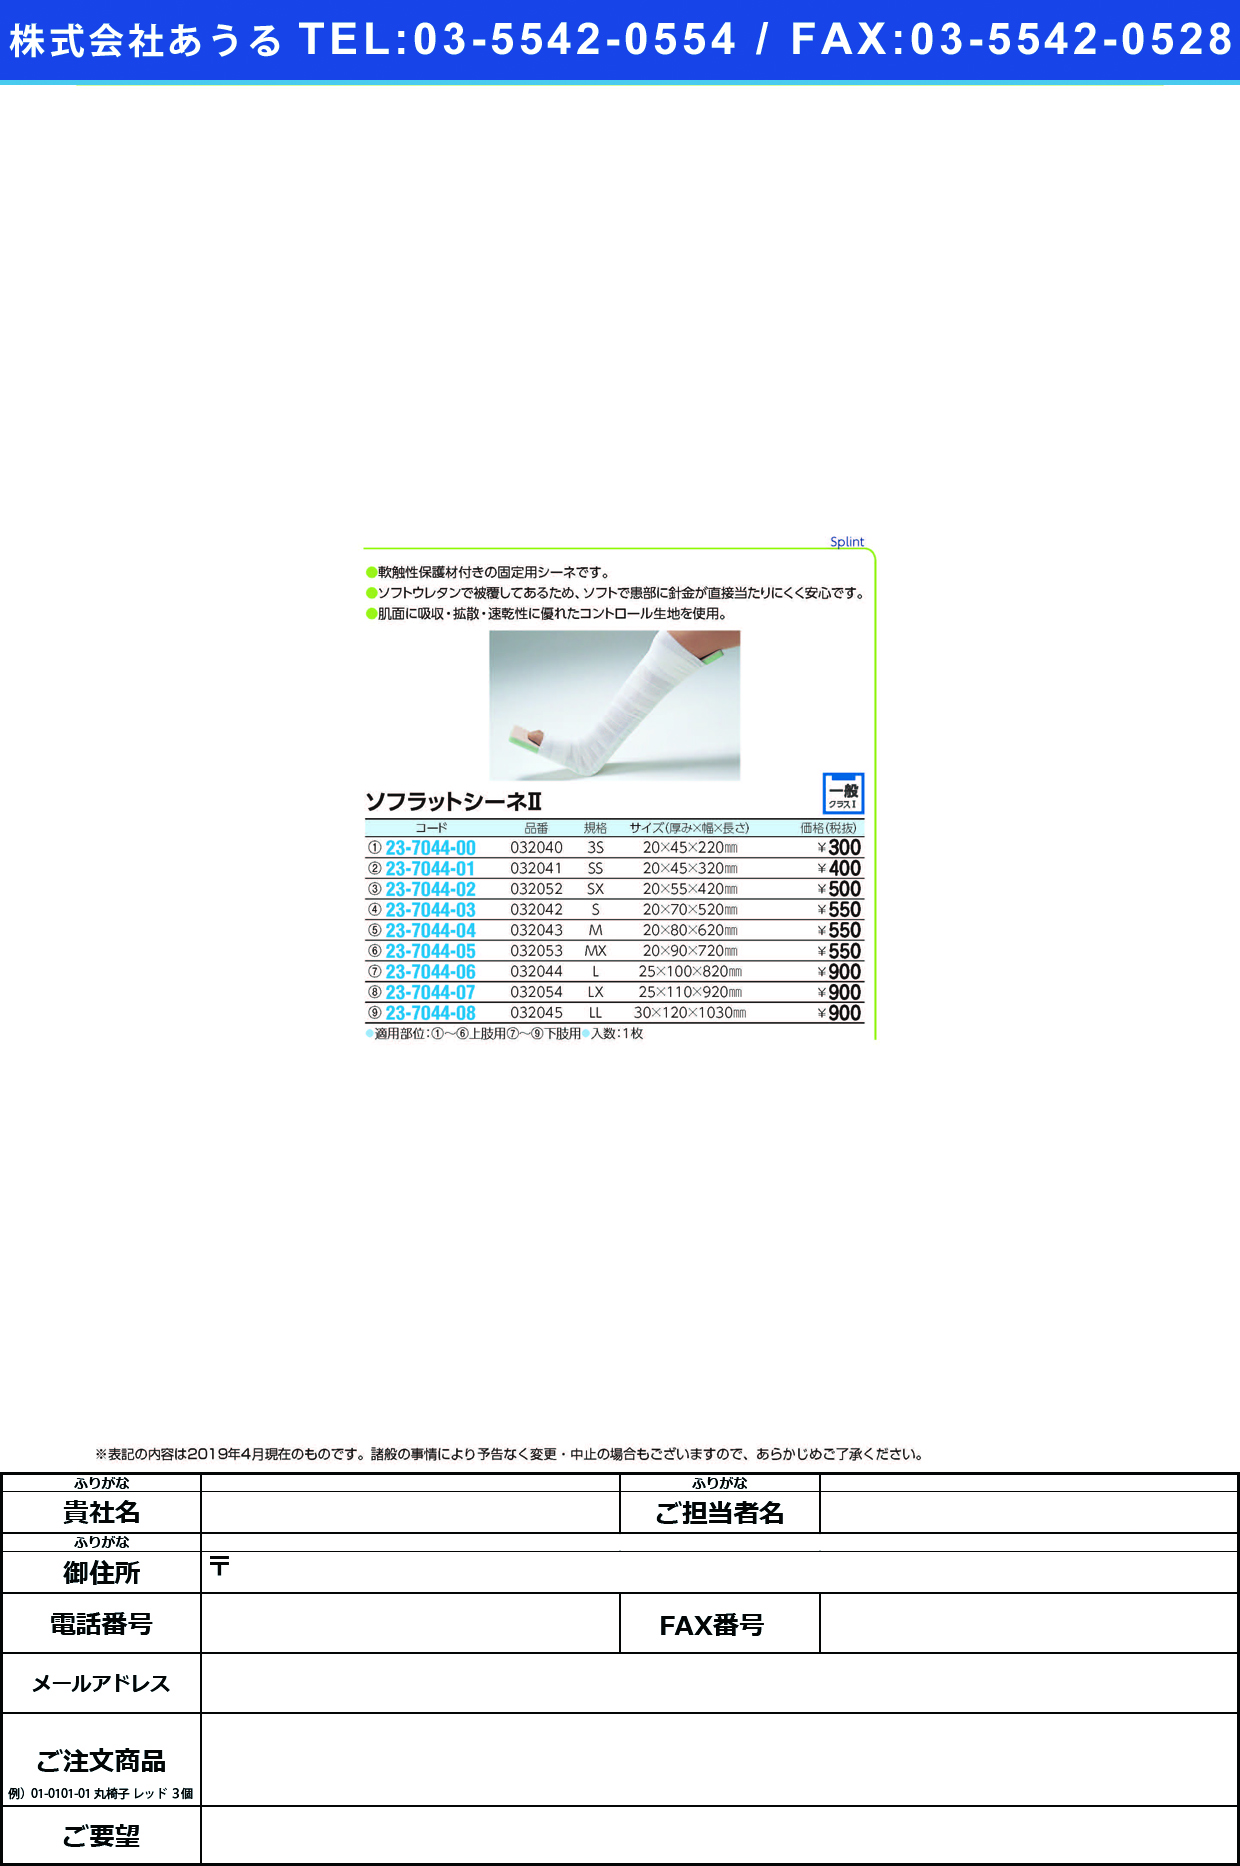 (23-7044-04)ソフラットシーネⅡ（Ｍ） 032043 ｿﾌﾗｯﾄｼｰﾈ2(M)(竹虎)【1枚単位】【2019年カタログ商品】